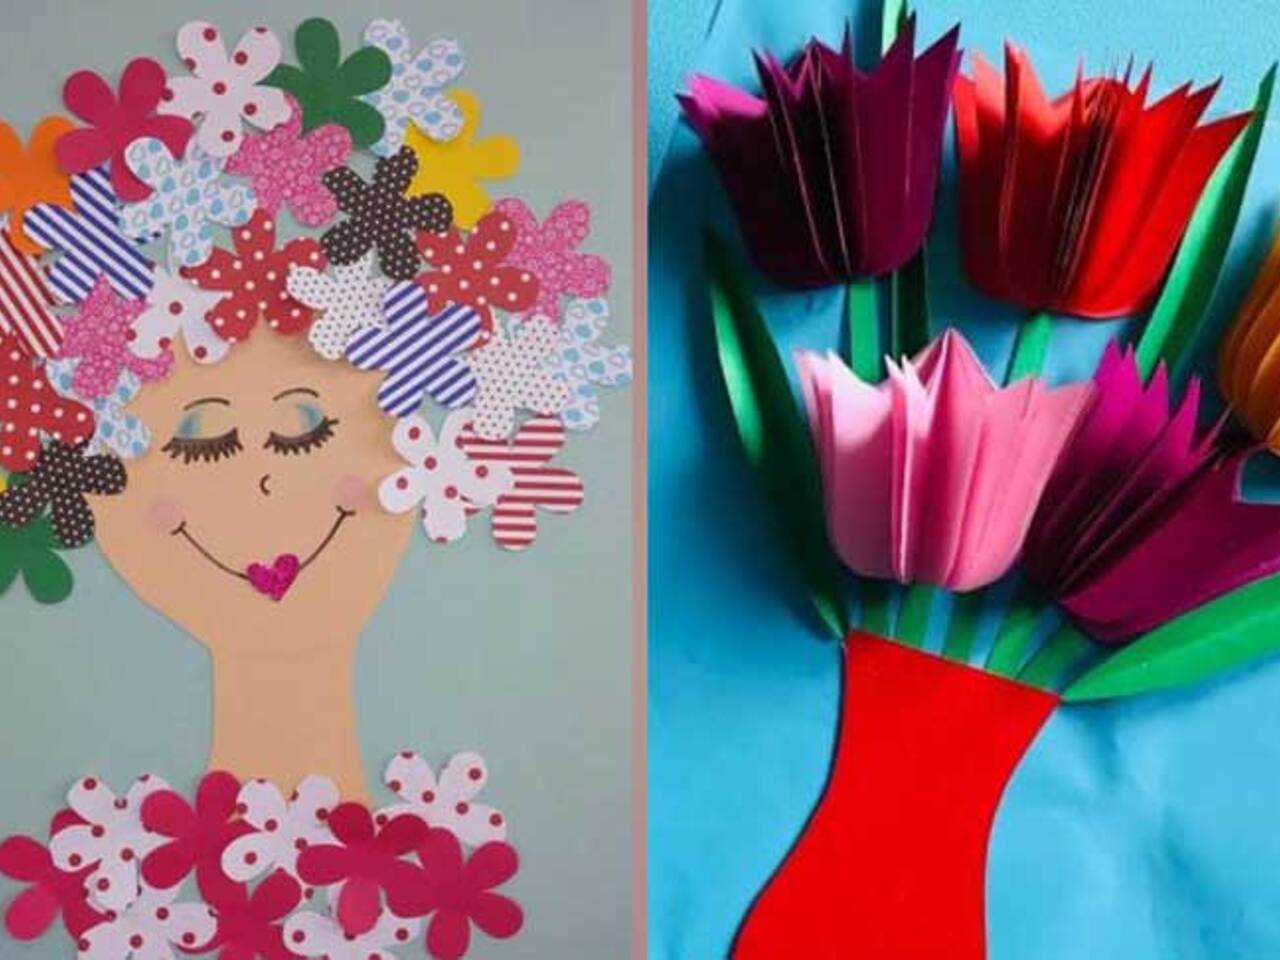 КАК СДЕЛАТЬ 3д ОТКРЫТКИ? ❤️ 3D Волшебные открытки с цветами ❤️ Подснежники ❤️ Поделки из бумаги